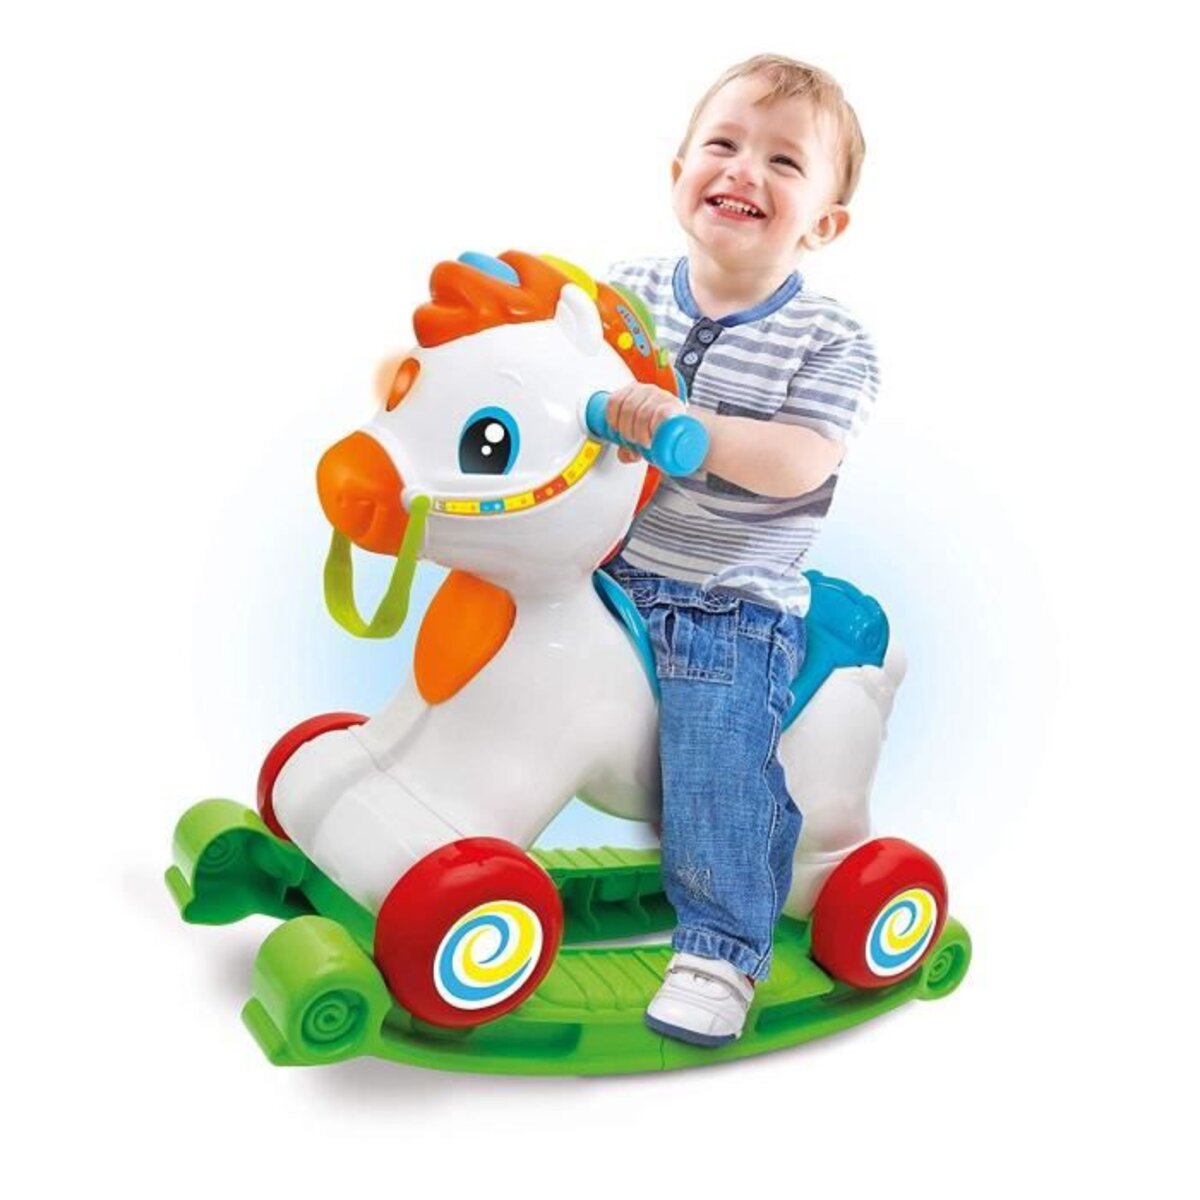 WJETYM Bébé chaise berçante enfants monter sur cheval jouet